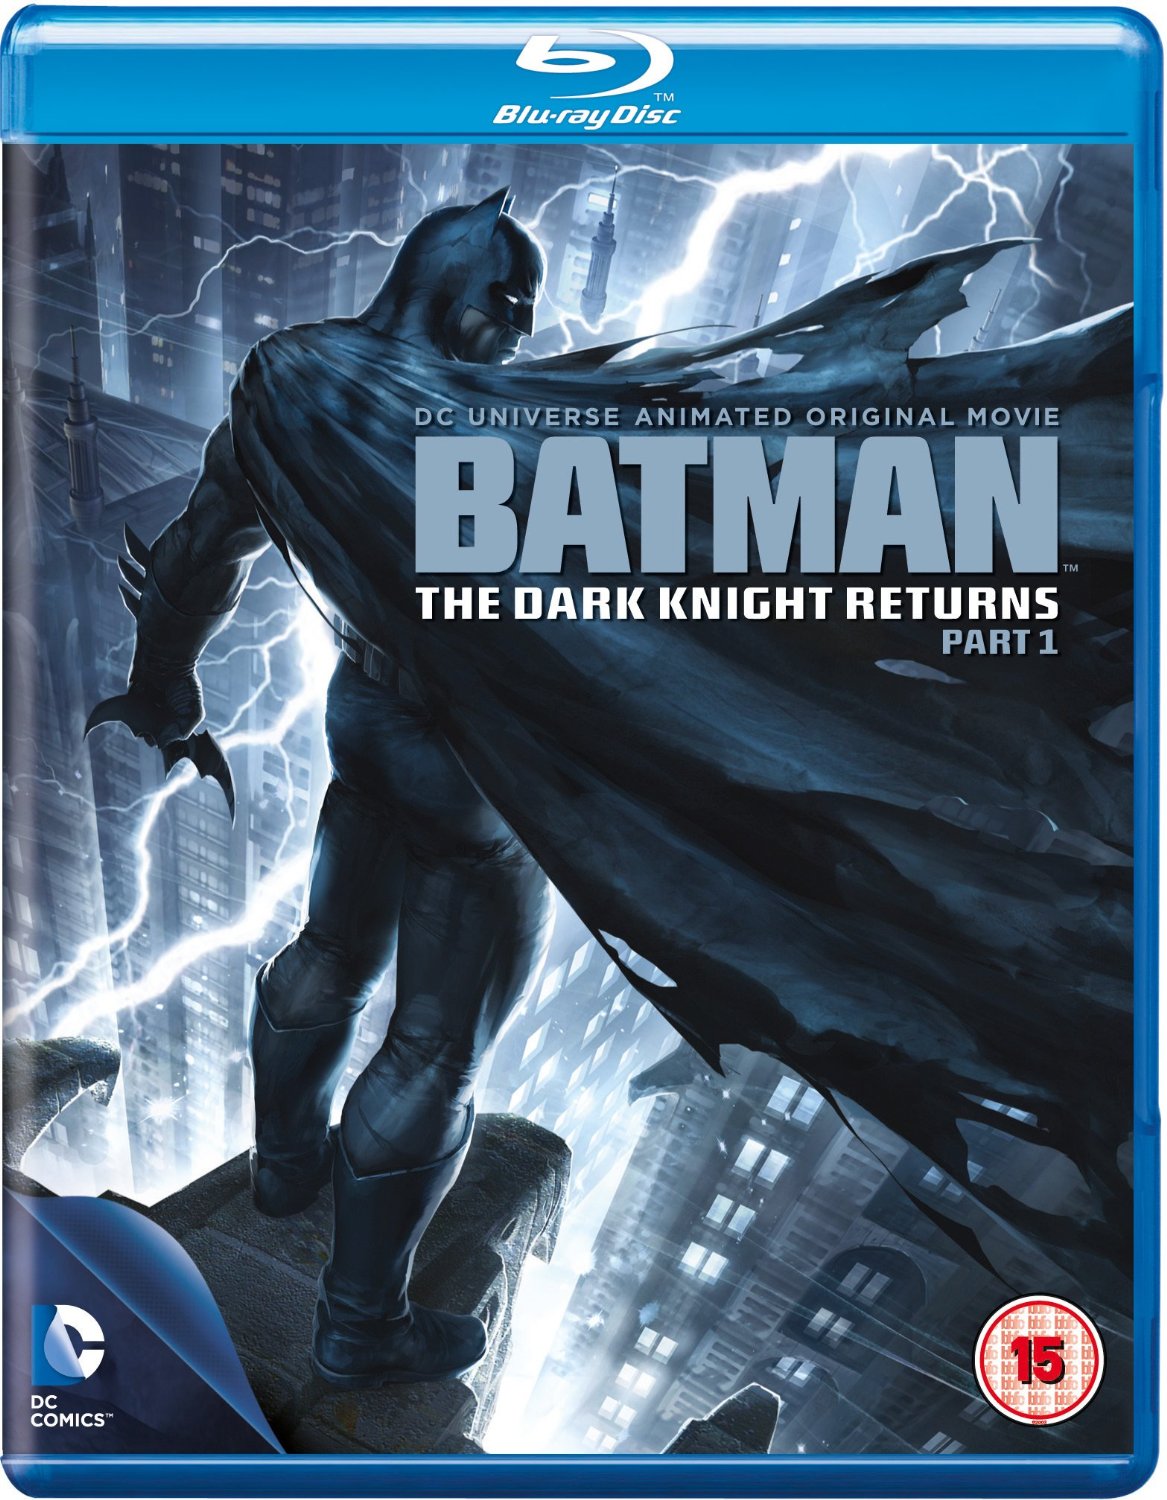 Batman: The Dark Knight Returns Part 1 [Blu-ray]